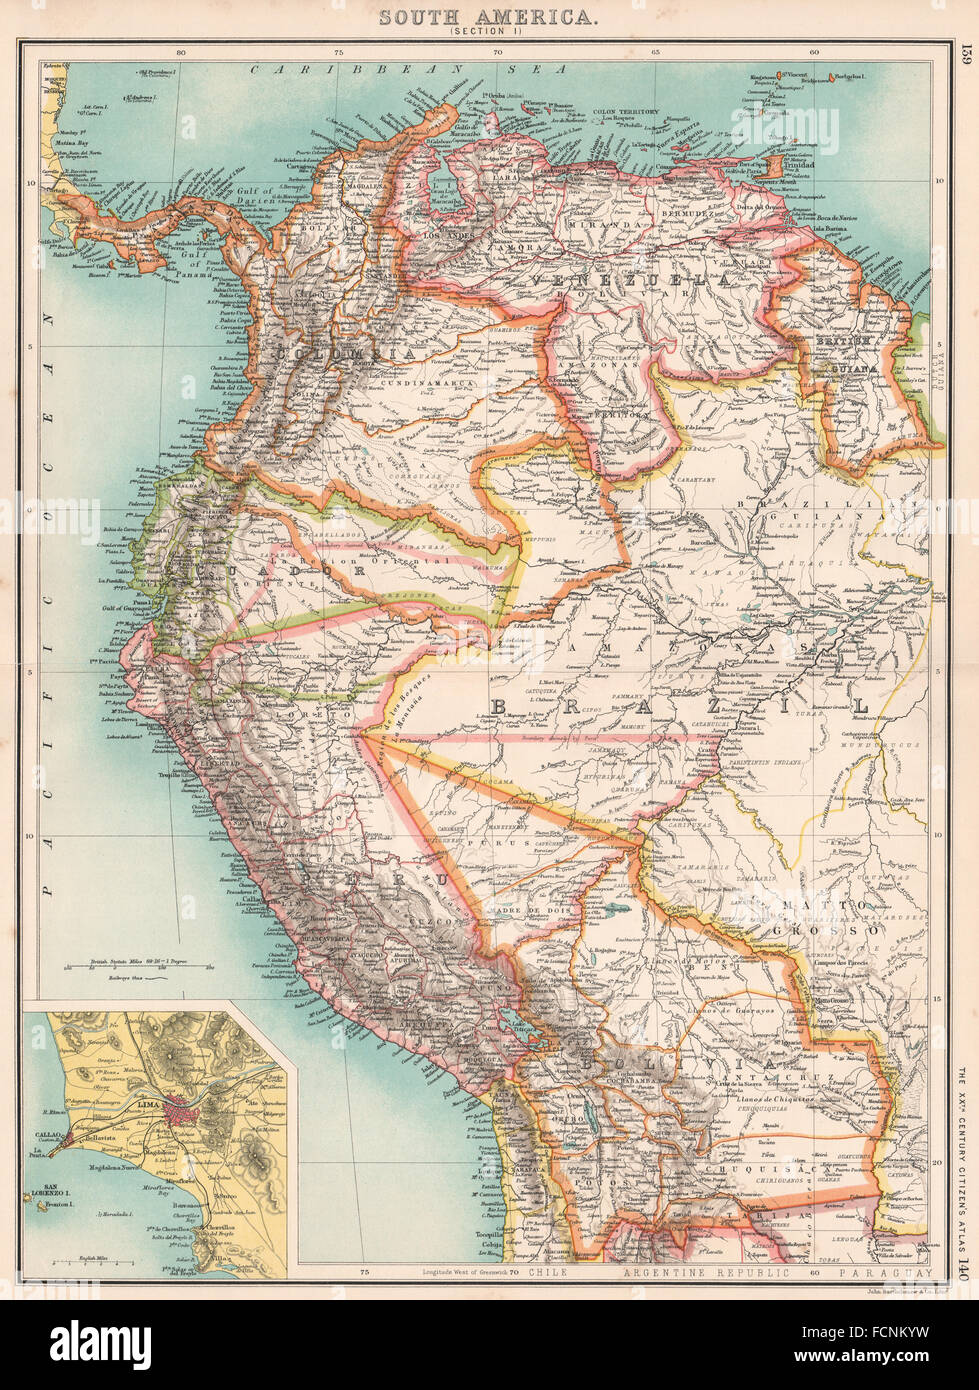 SOUTH AMERICA NW: Venezuela Colombia Ecuador Peru Bolivia. Inset Lima, 1901 map Stock Photo